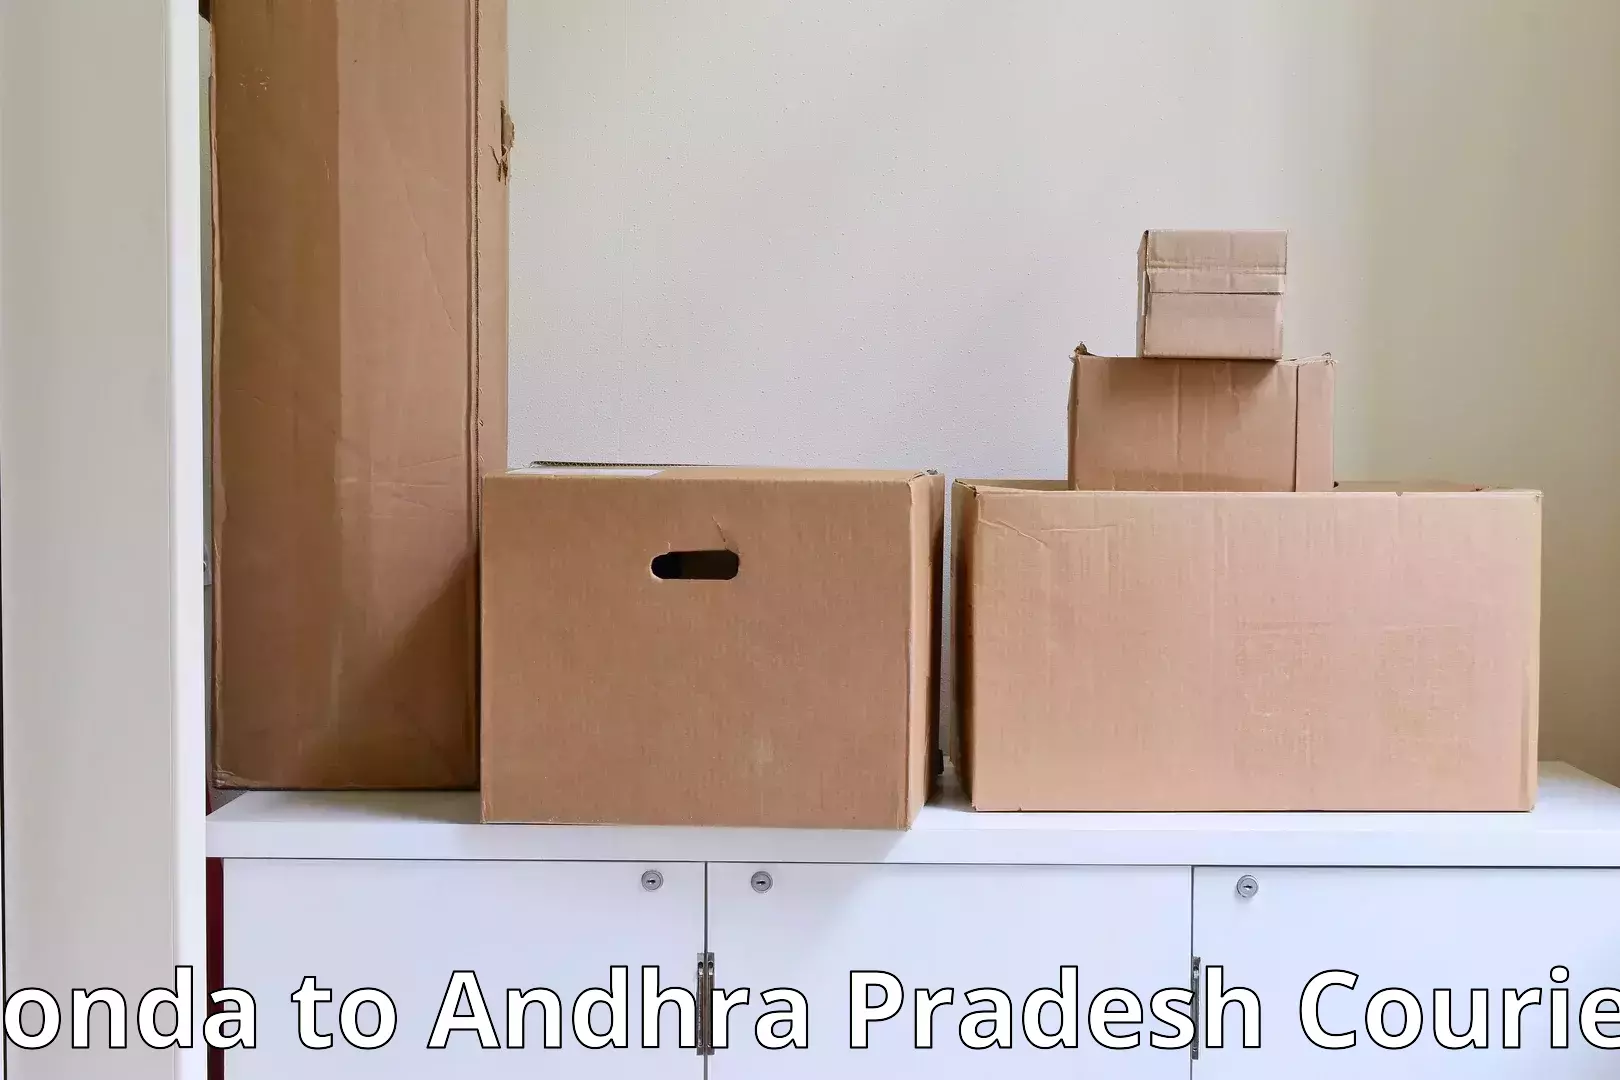 Home relocation experts Ponda to Andhra Pradesh